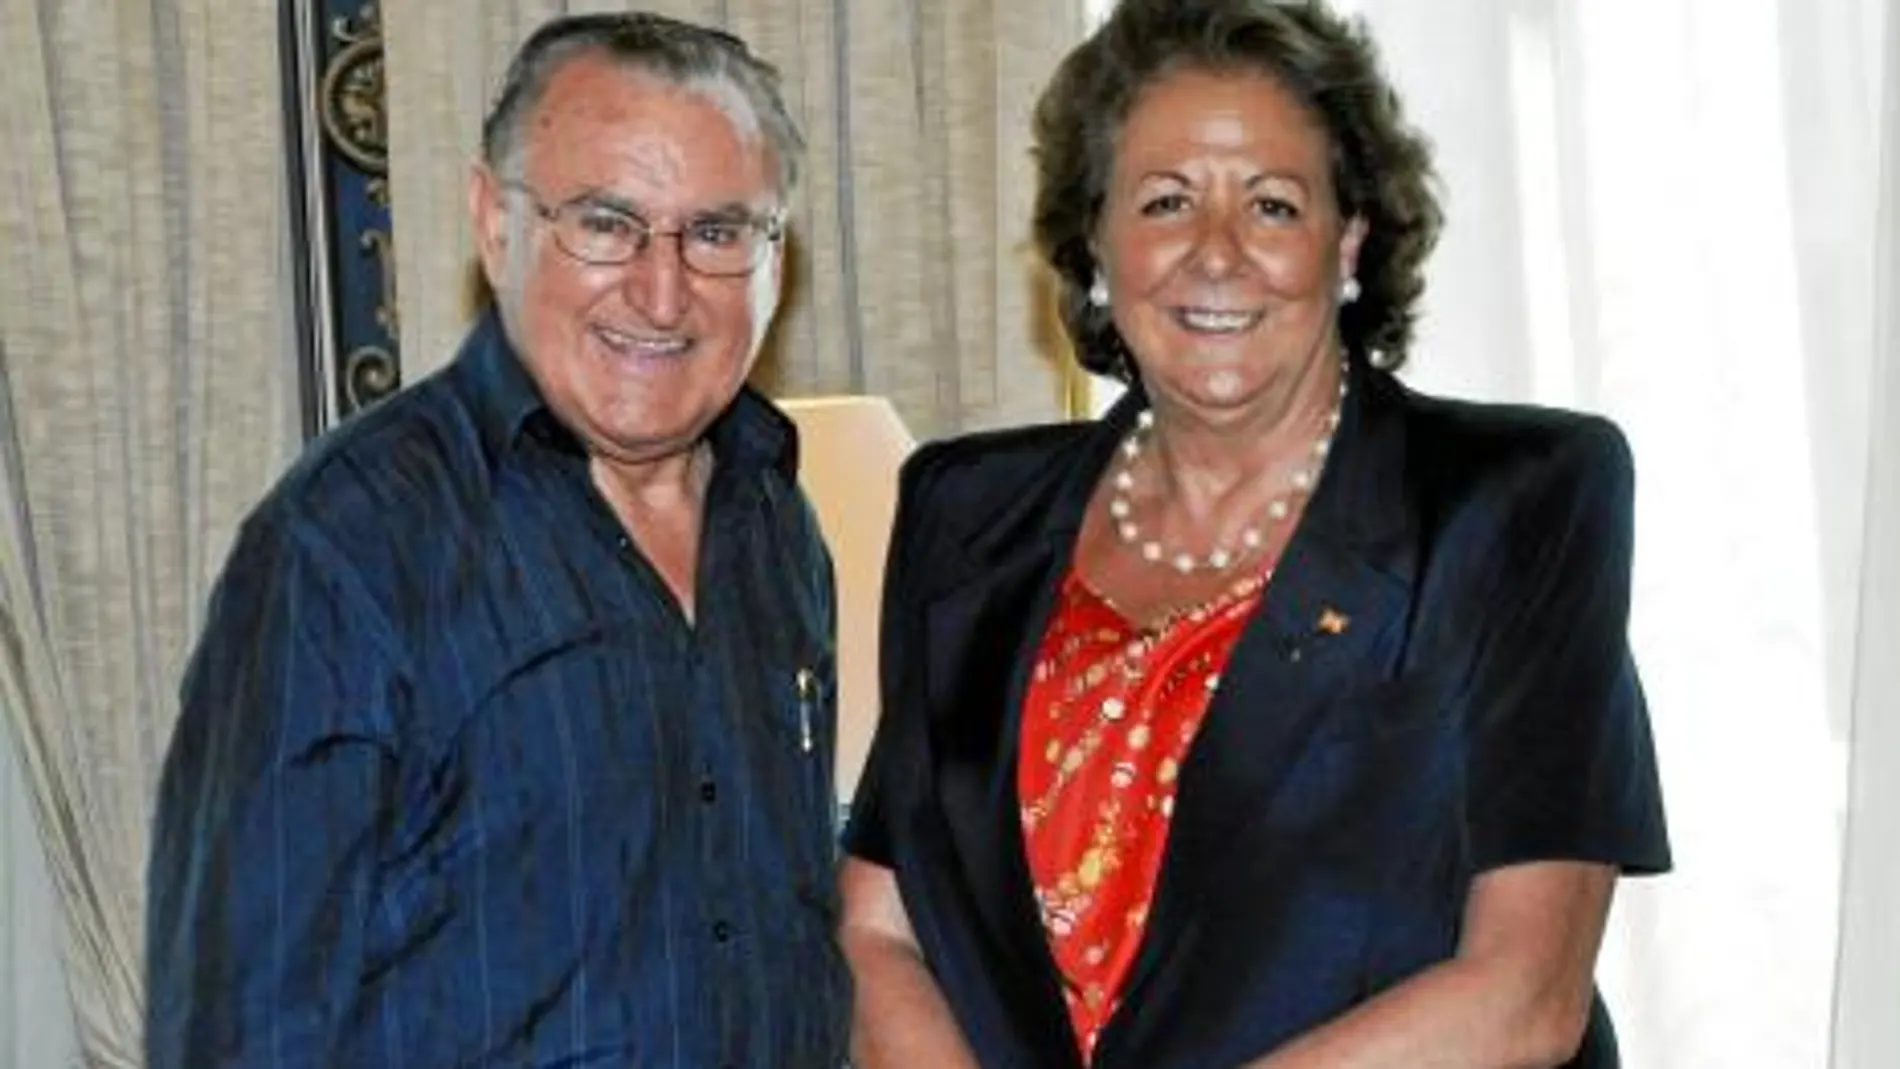 La alcaldesa de Valencia, Rita Barberá, junto al párroco Castellanos